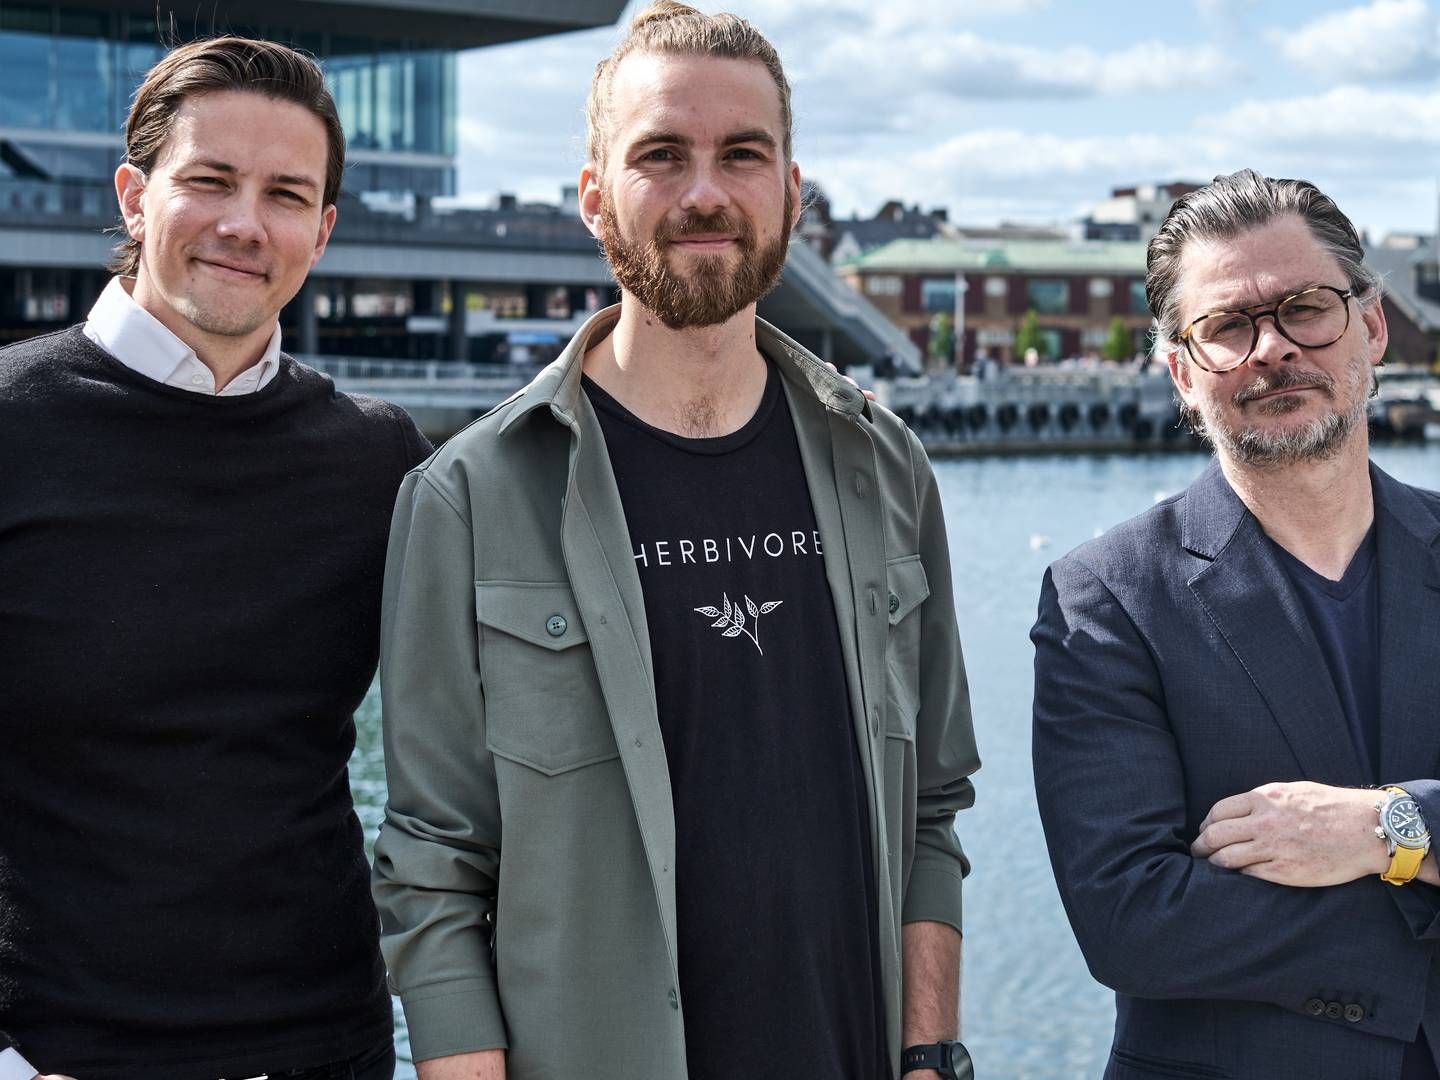 Fra venstre ses Jacob Vorsø Pedersen, Christian Thisted og Chris Albert Pedersen. Sidstnævnte er direktør og medejer i Fellow Pay. | Foto: PR / Ray Løvschall